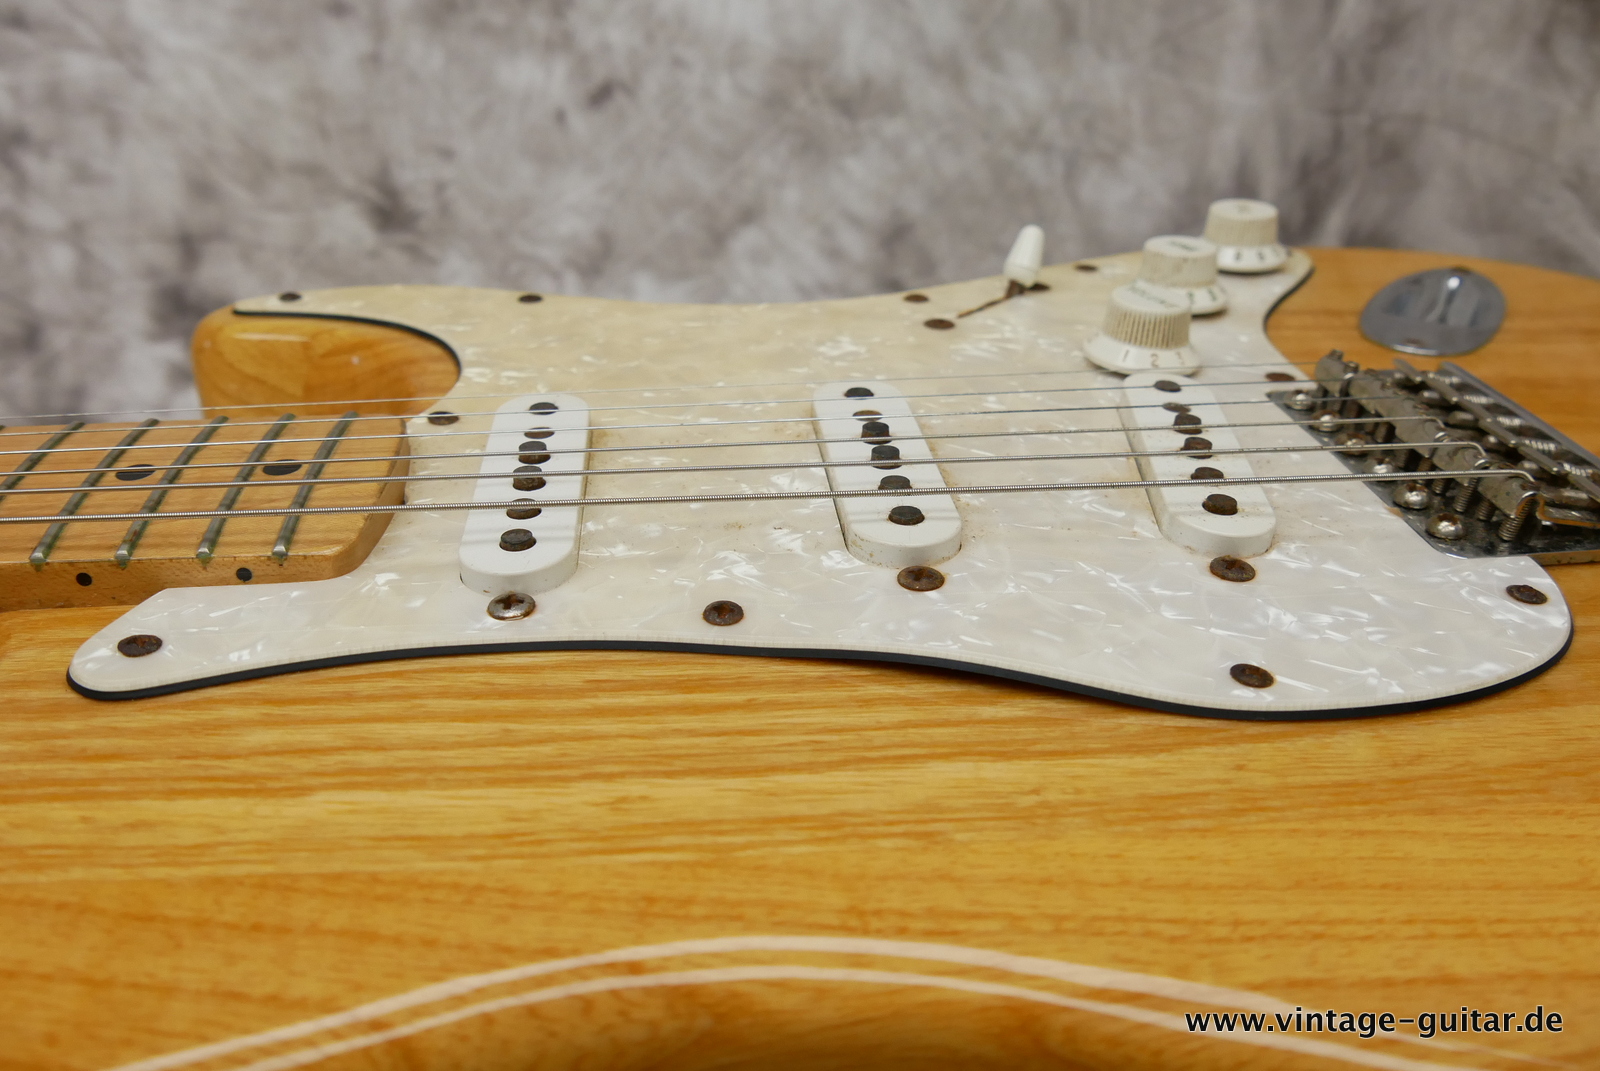 Fender_Stratocaster_70s_reissue_maple_neck_1999_Mexico-016.JPG